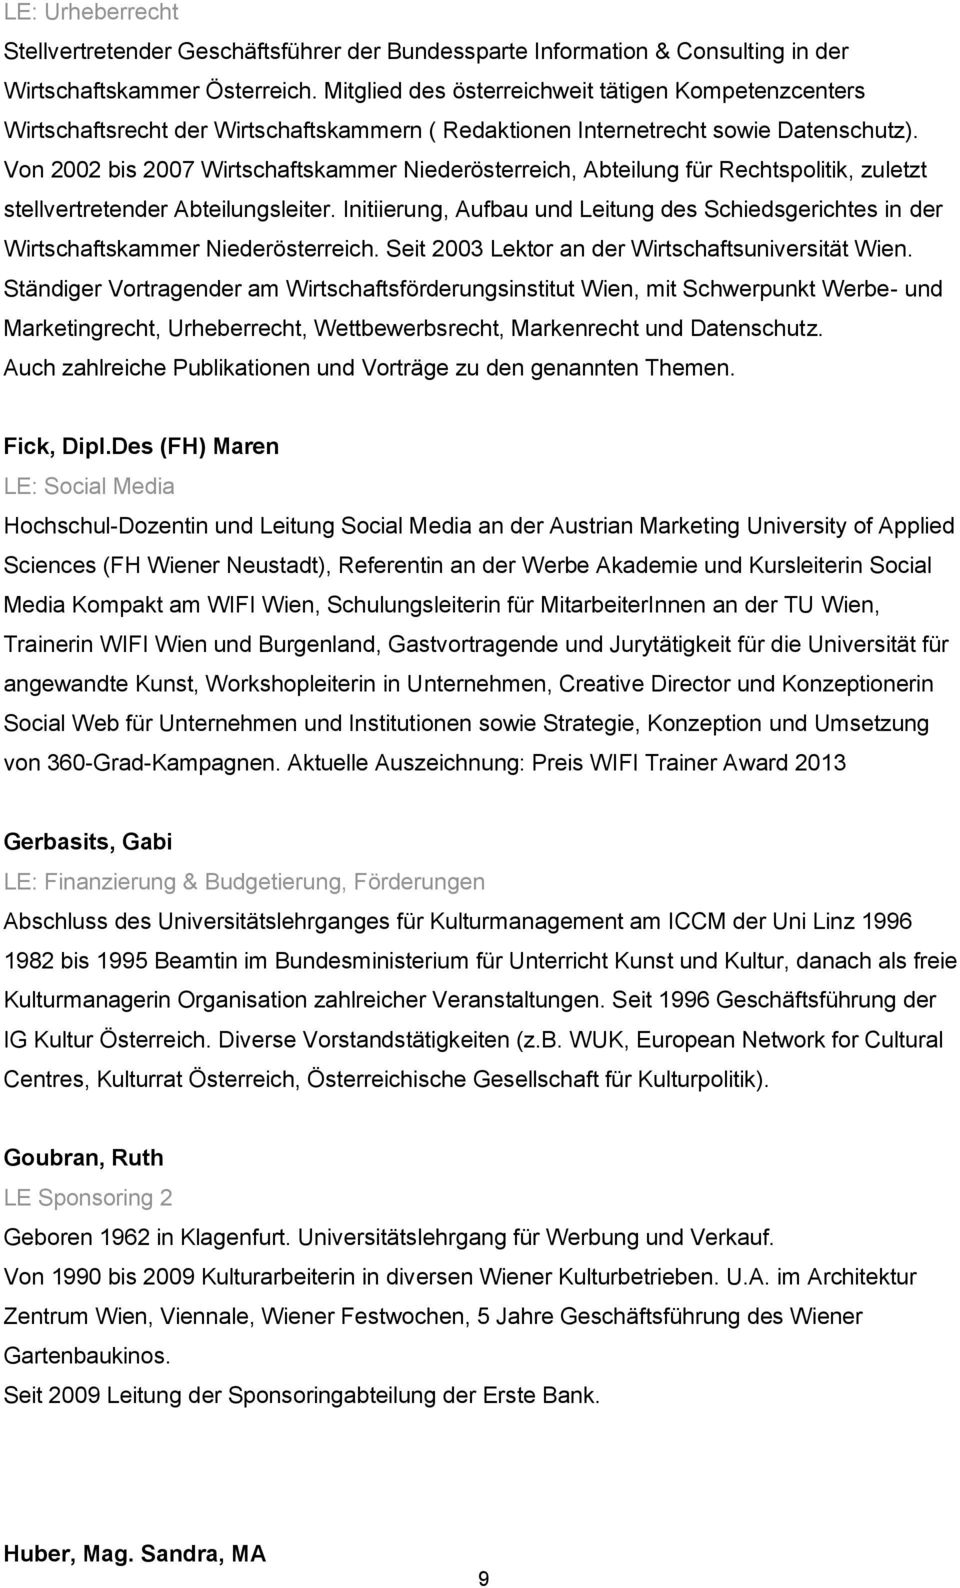 Von 2002 bis 2007 Wirtschaftskammer Niederösterreich, Abteilung für Rechtspolitik, zuletzt stellvertretender Abteilungsleiter.